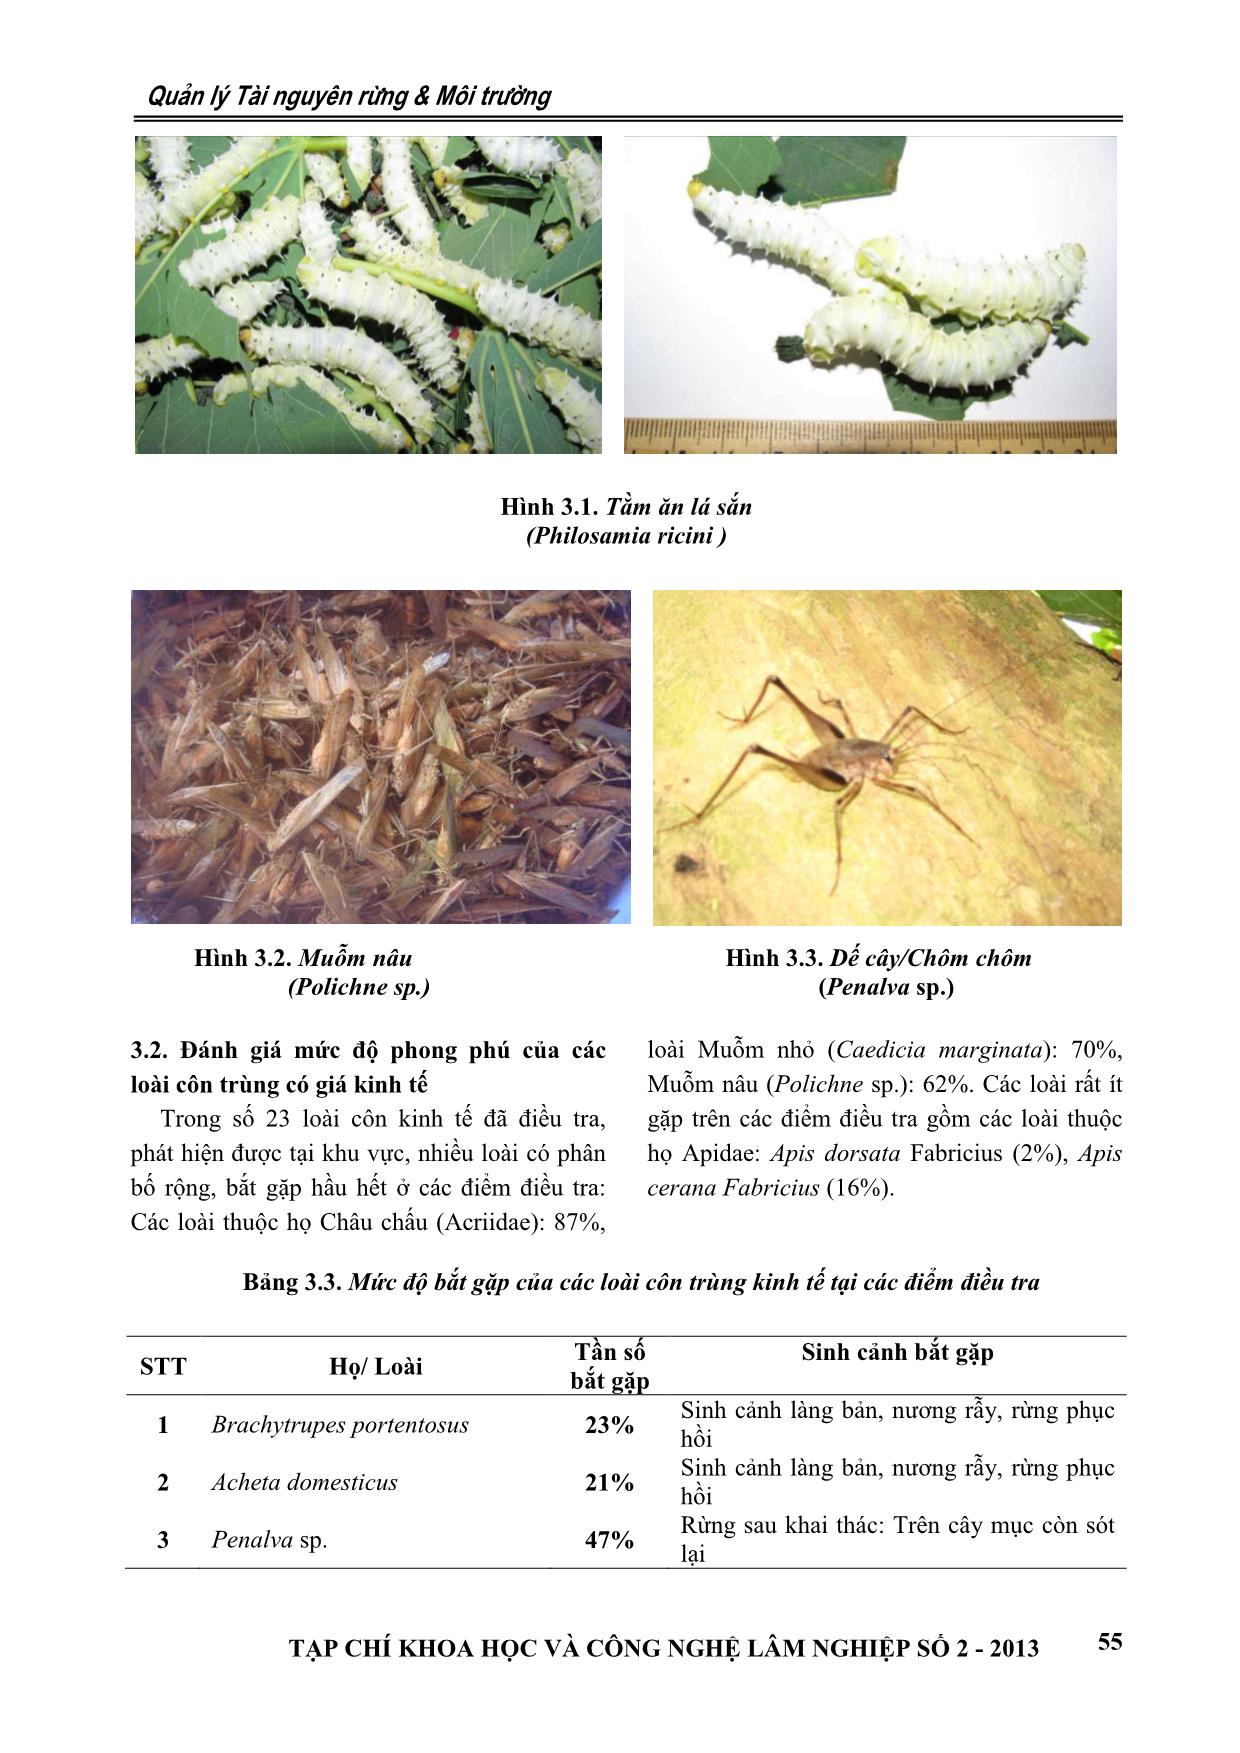 Tiềm năng côn trùng kinh tế và các giải pháp khai thác hiệu quả, bền vững tại khu bảo tồn thiên nhiên Pù Luông, Thanh Hóa trang 4